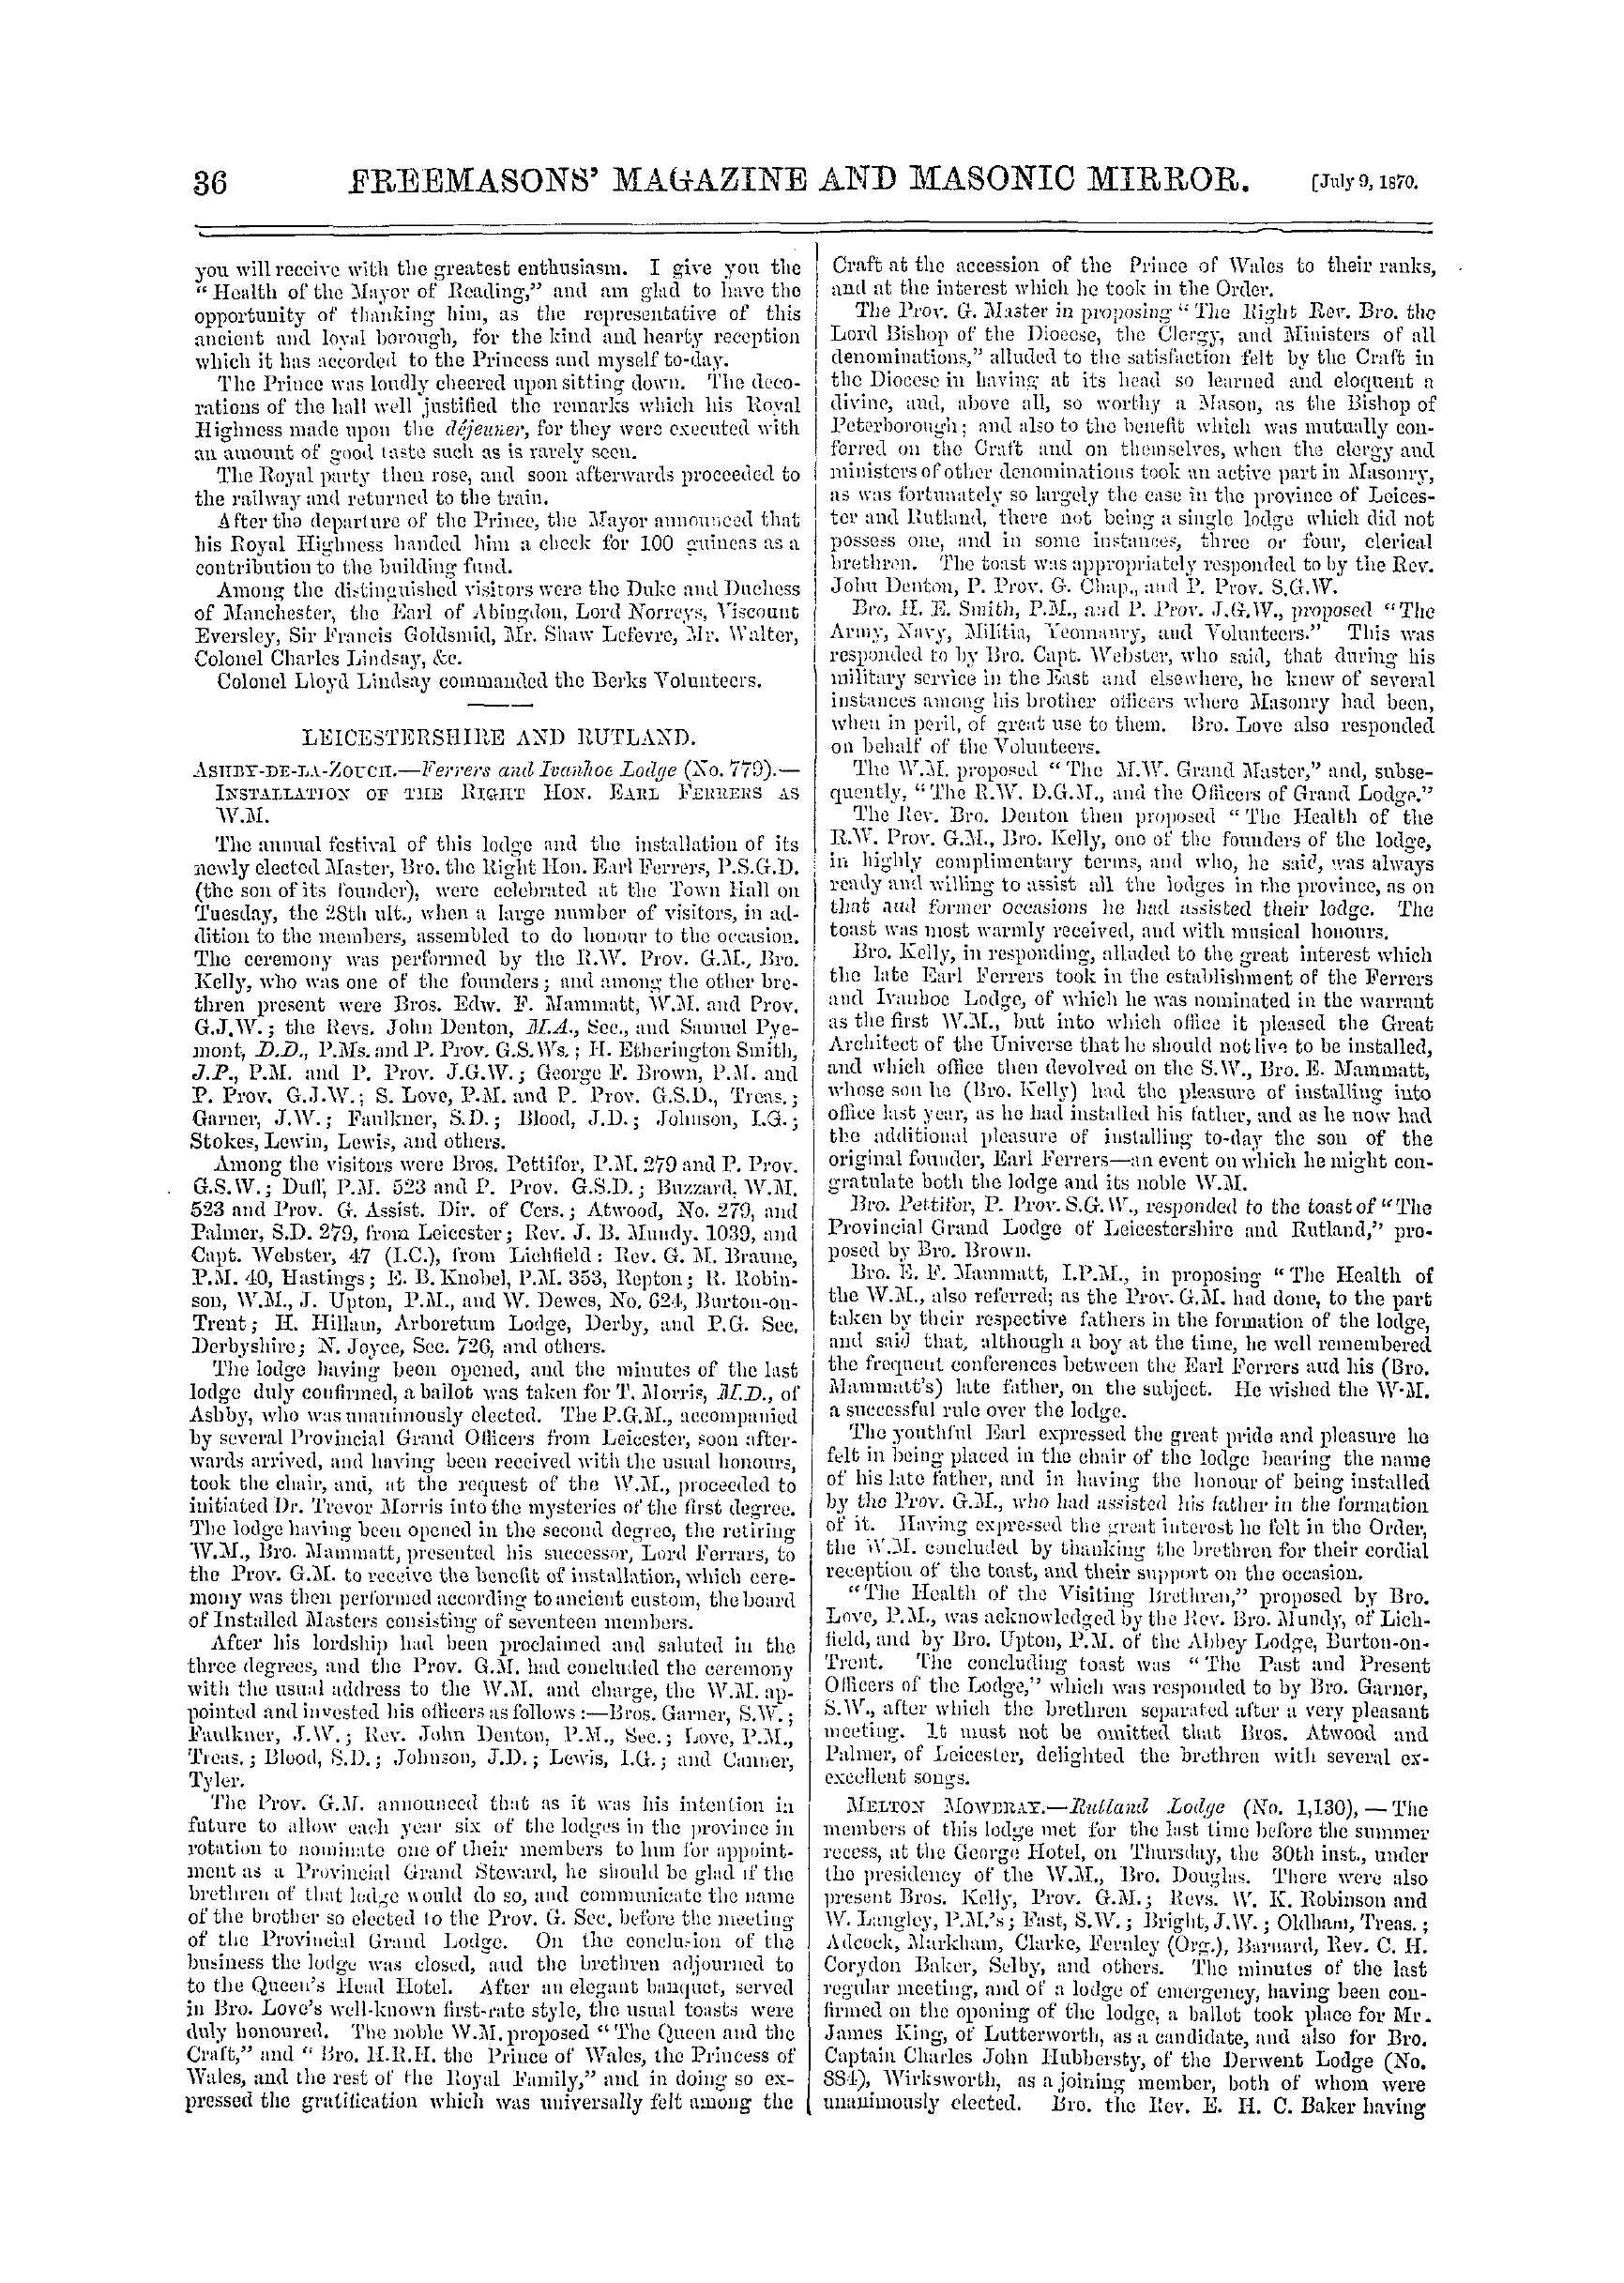 The Freemasons' Monthly Magazine: 1870-07-09: 16